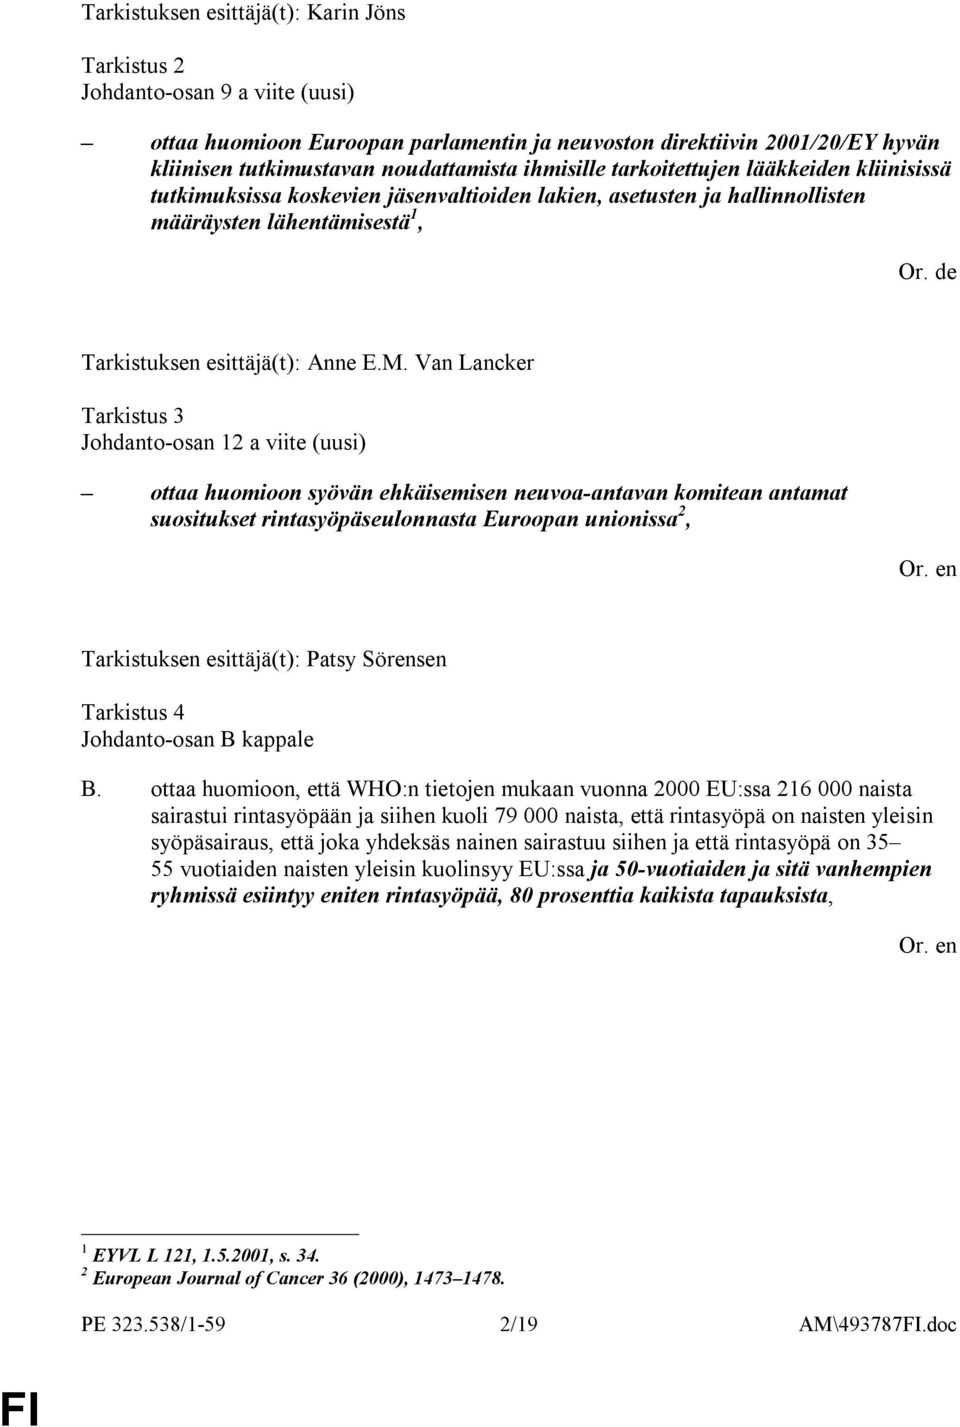 Van Lancker Tarkistus 3 Johdanto-osan 12 a viite (uusi) ottaa huomioon syövän ehkäisemisen neuvoa-antavan komitean antamat suositukset rintasyöpäseulonnasta Euroopan unionissa 2, Tarkistus 4